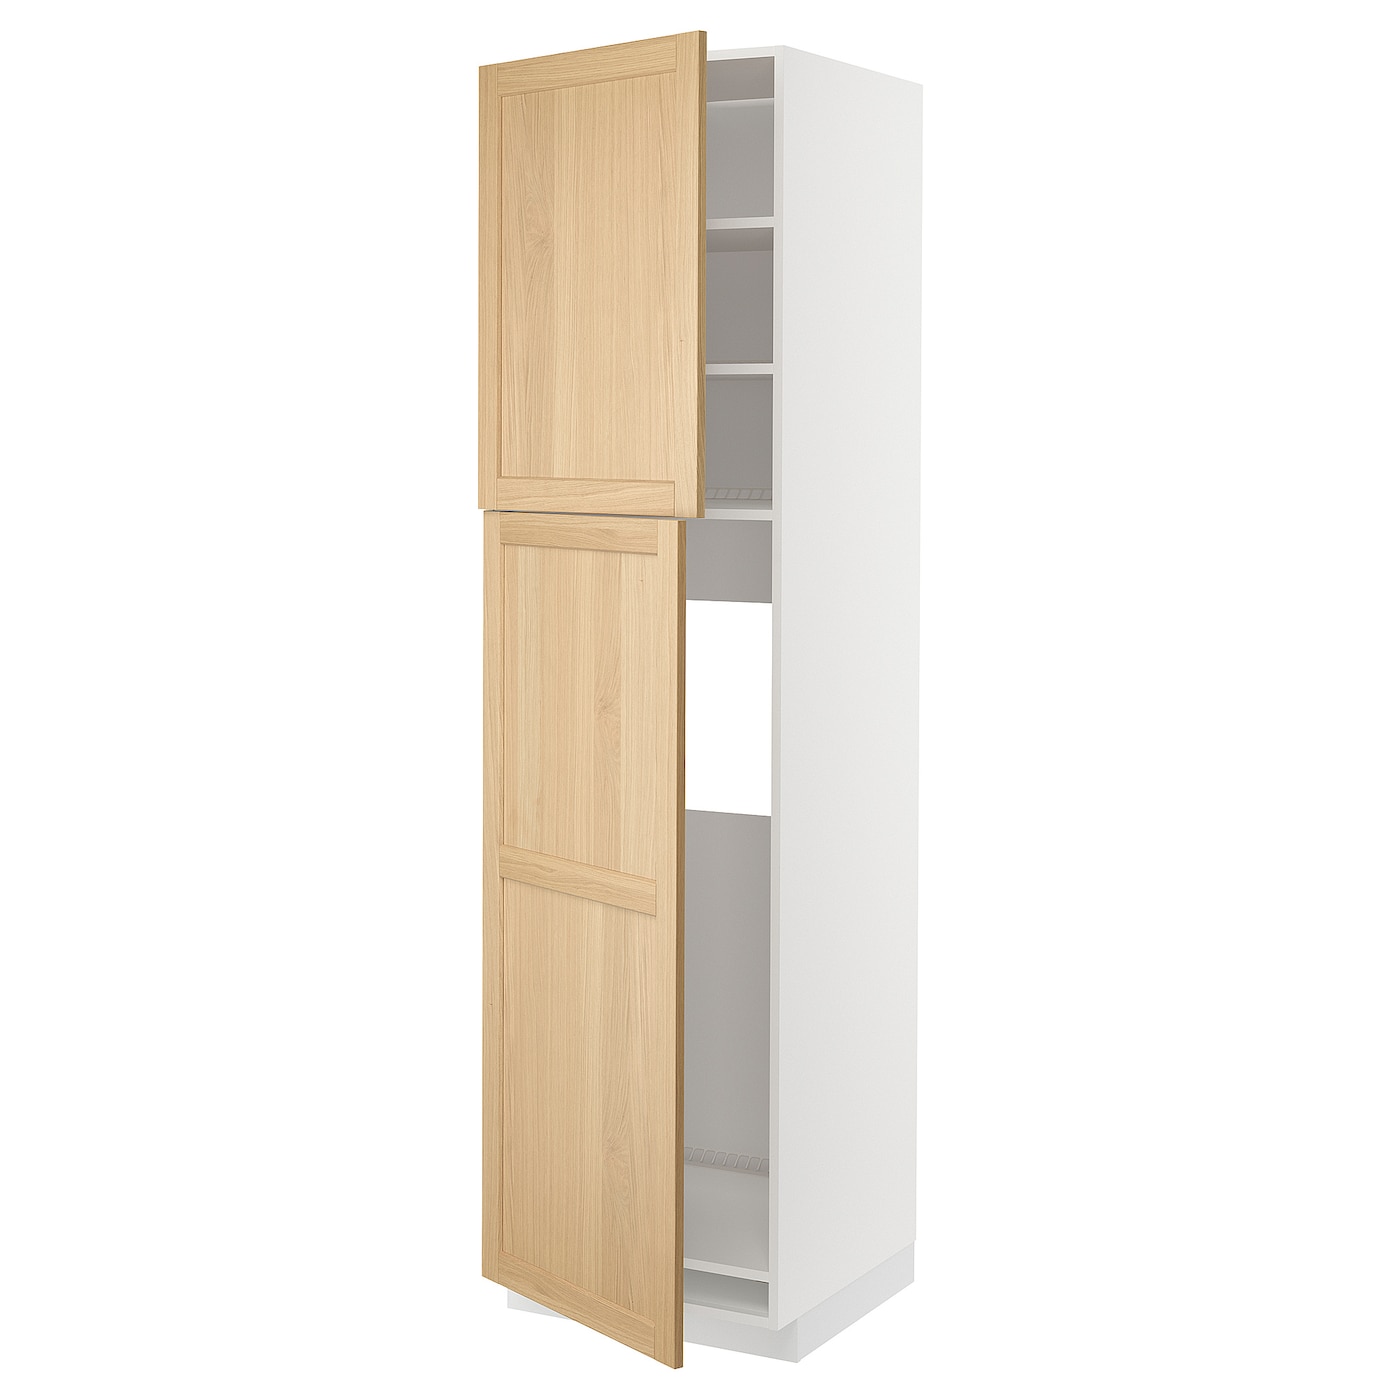 Высокий кухонный шкаф с полками - IKEA METOD/МЕТОД ИКЕА, 220х60х60 см, белый/светло-коричневый